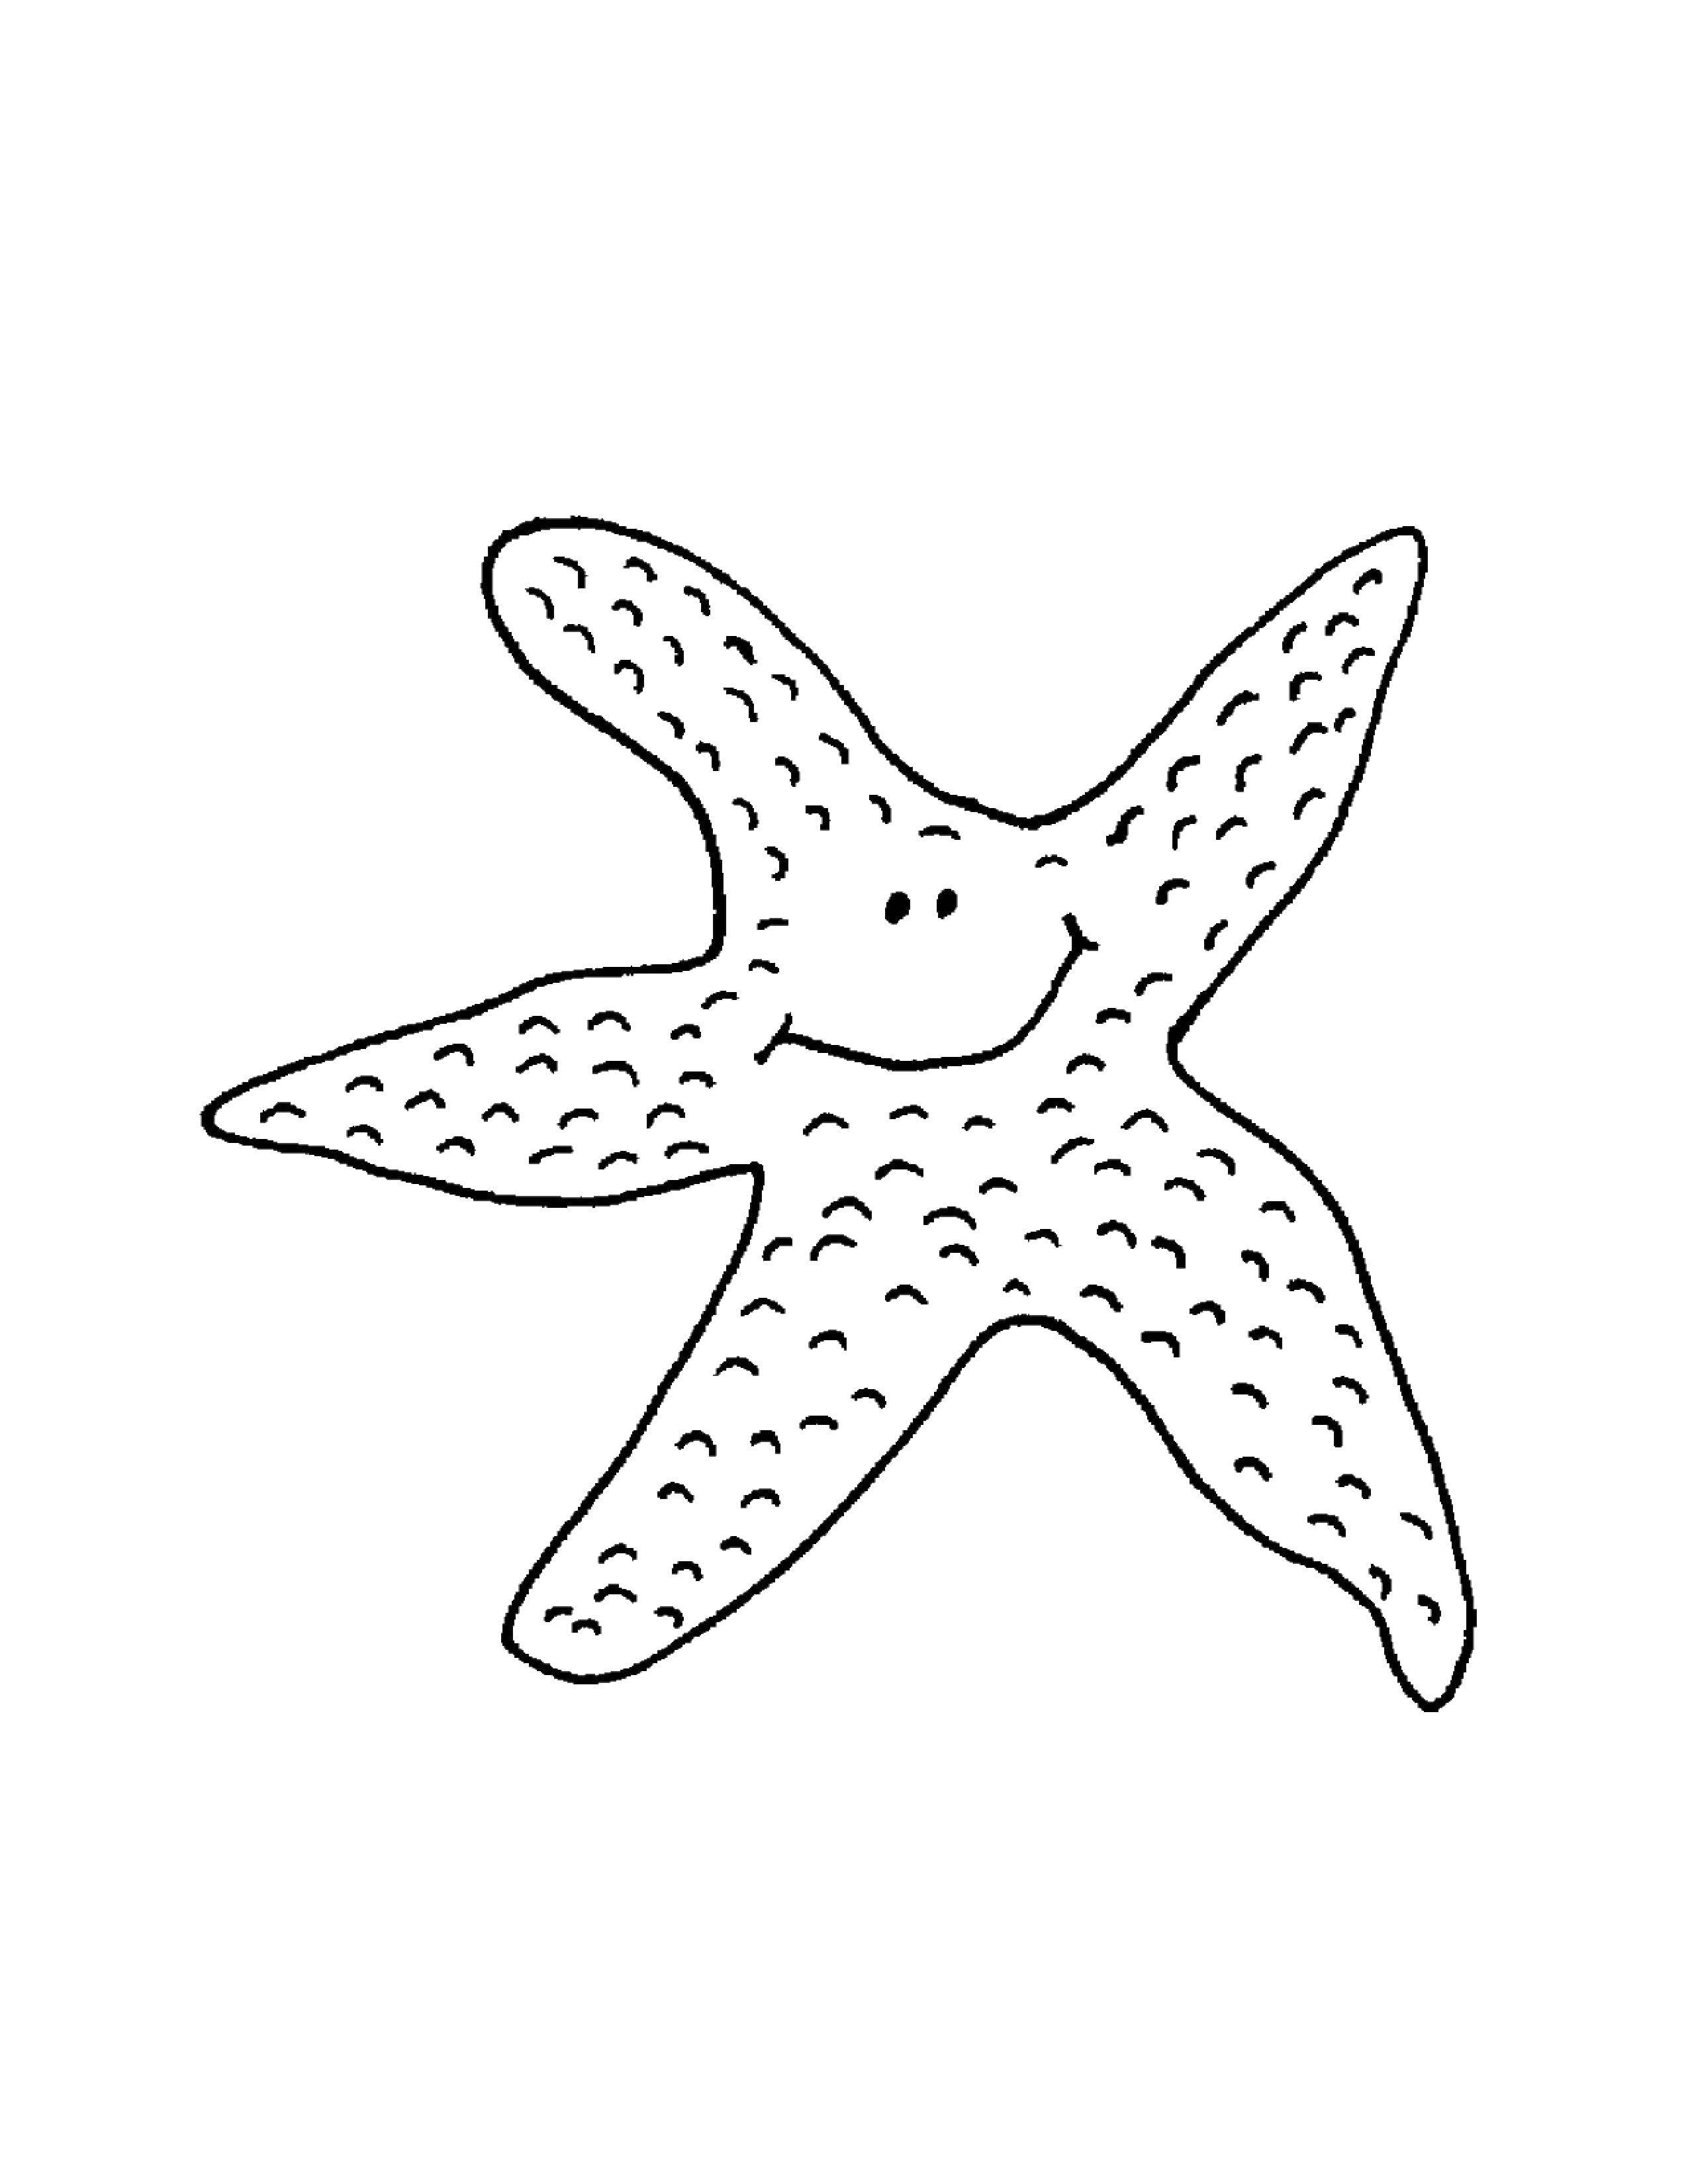 Coloring Starfish. Category Marine animals. Tags:  Underwater world, starfish.